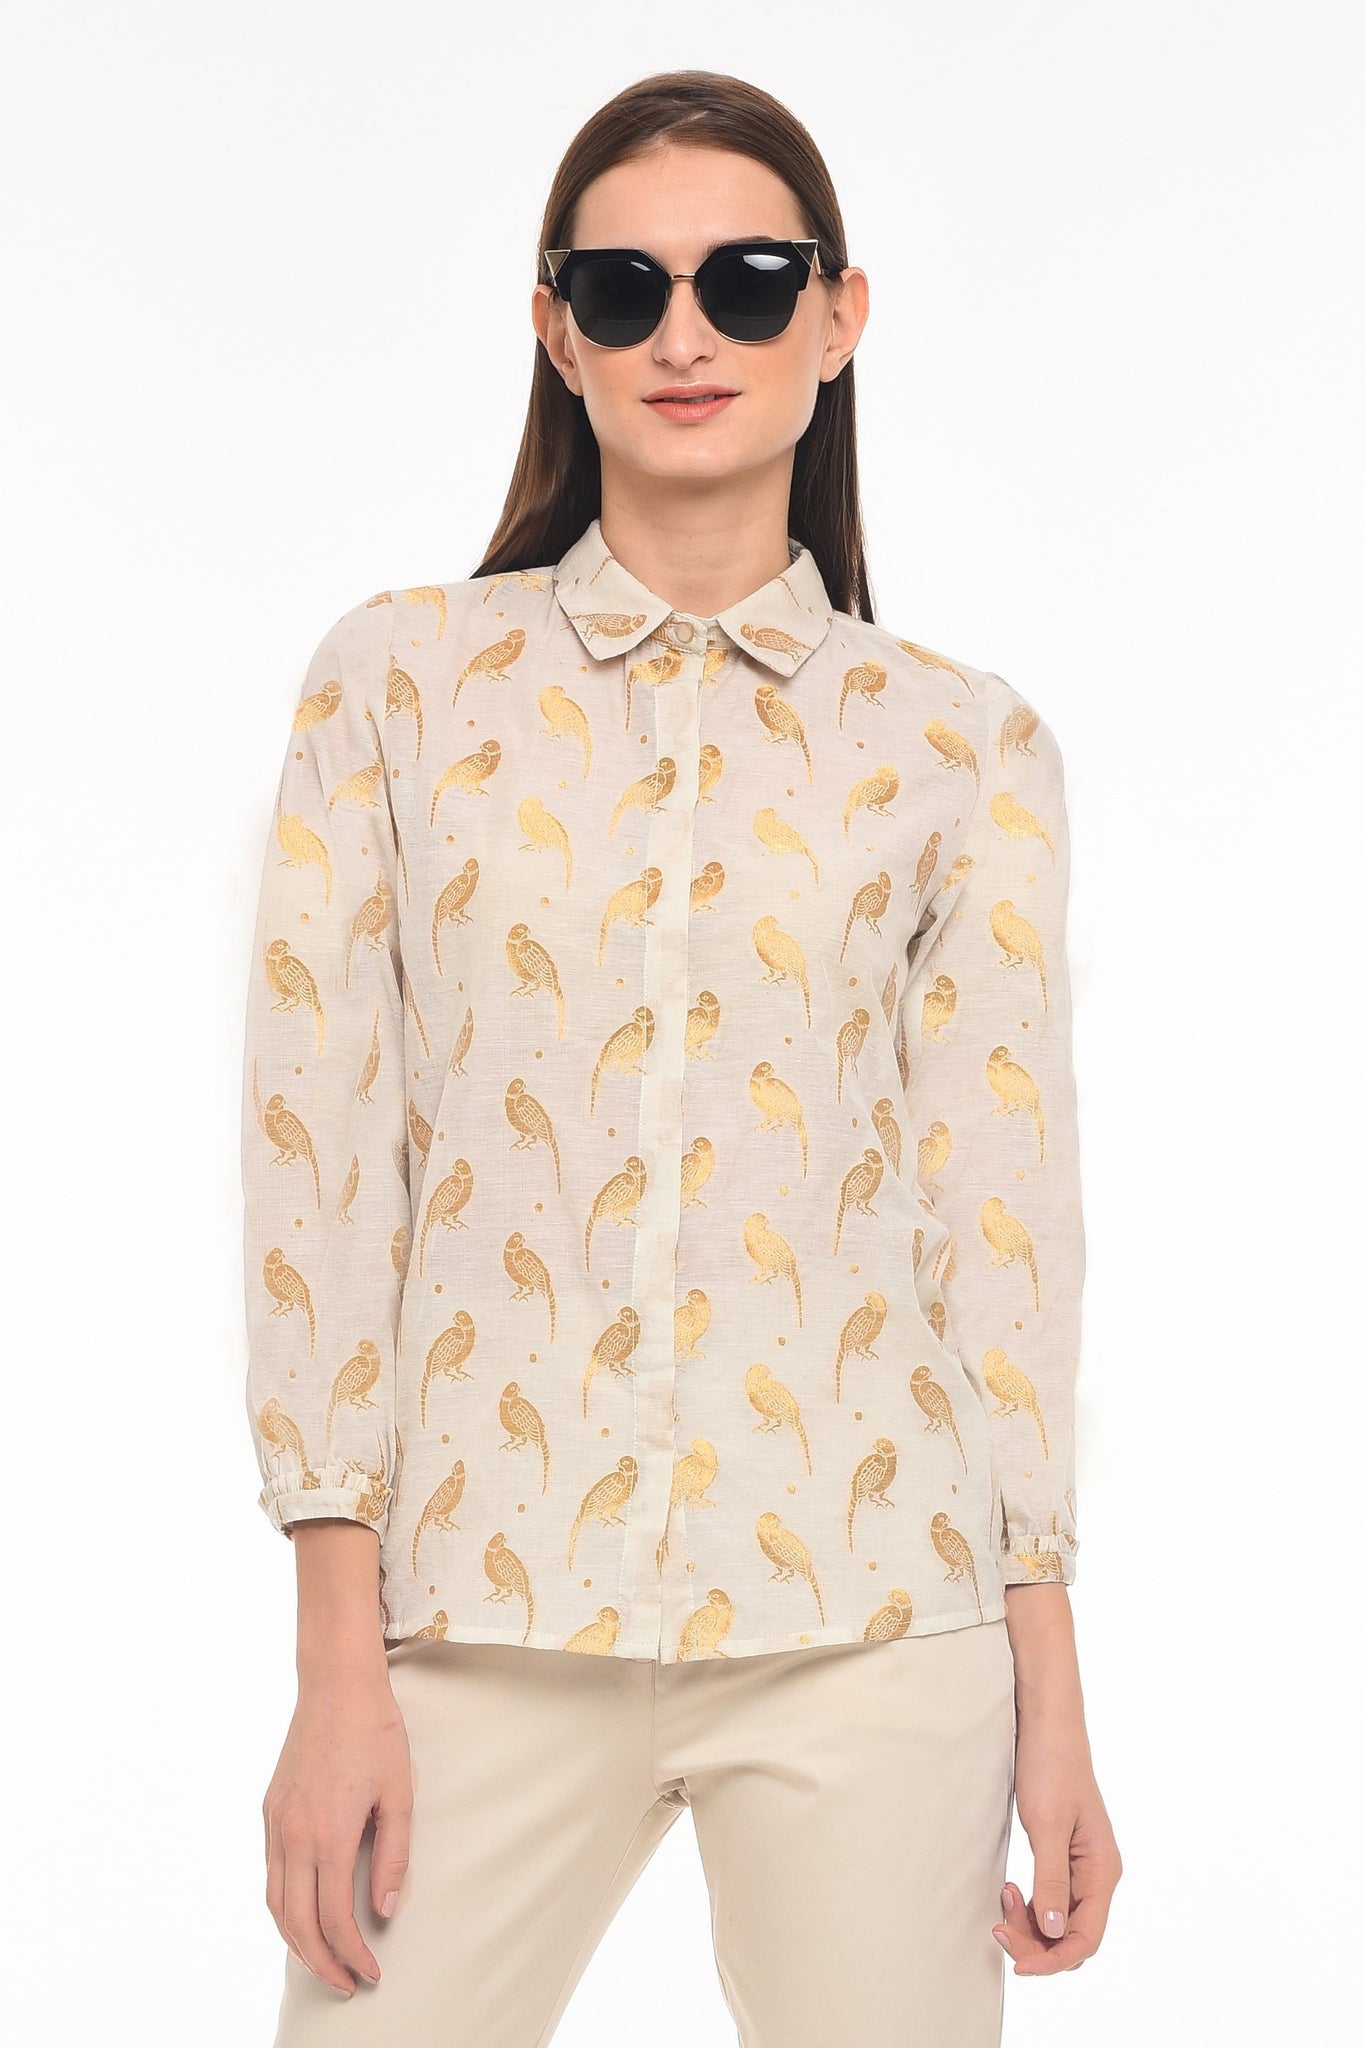 Summer shirt with bird patterns - AGAATI